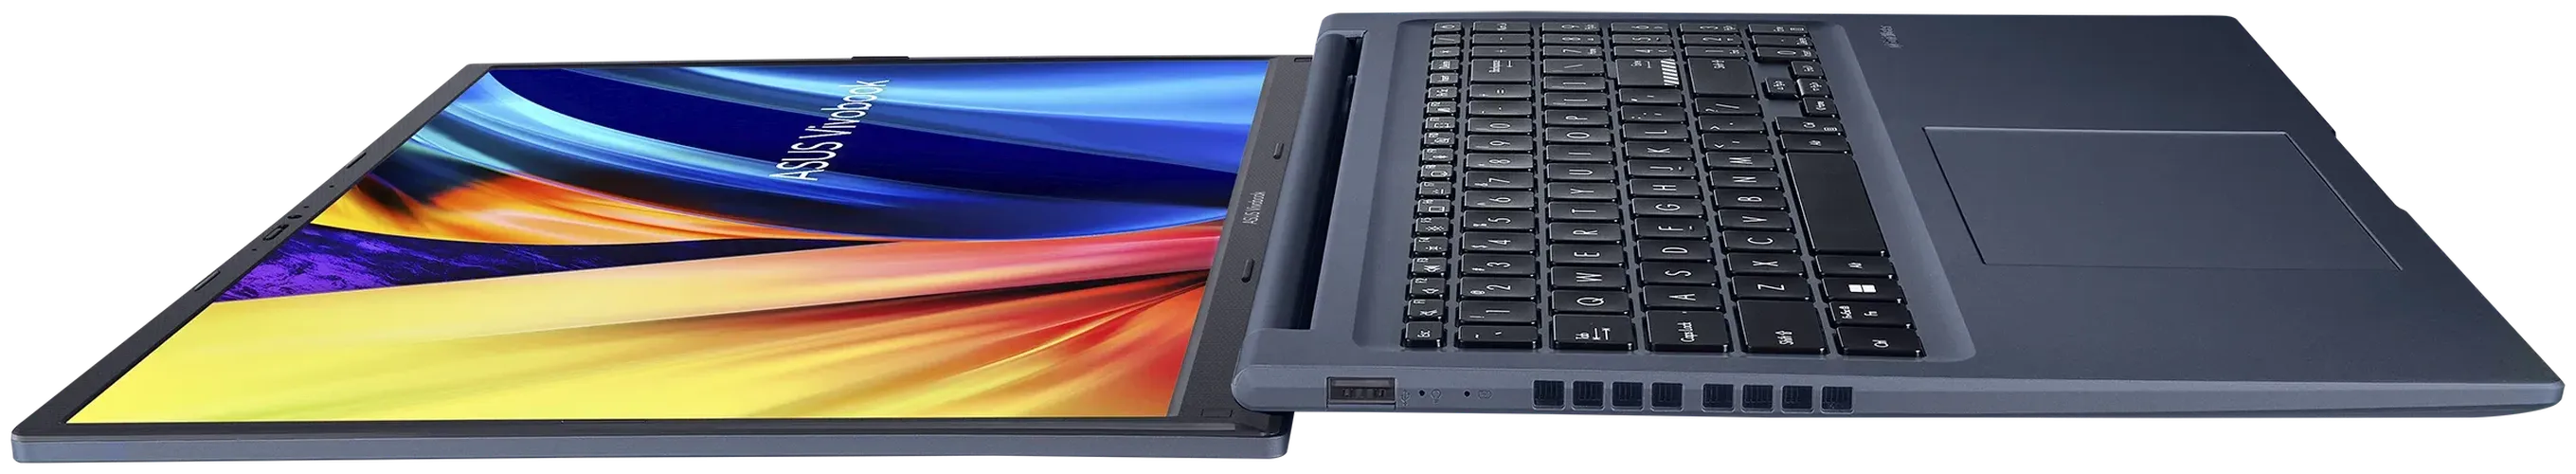 Ноутбук ASUS Vivobook 16X Ryzen 5 5600H, 512 GB SSD, 8 GB DDR4, в Узбекистане